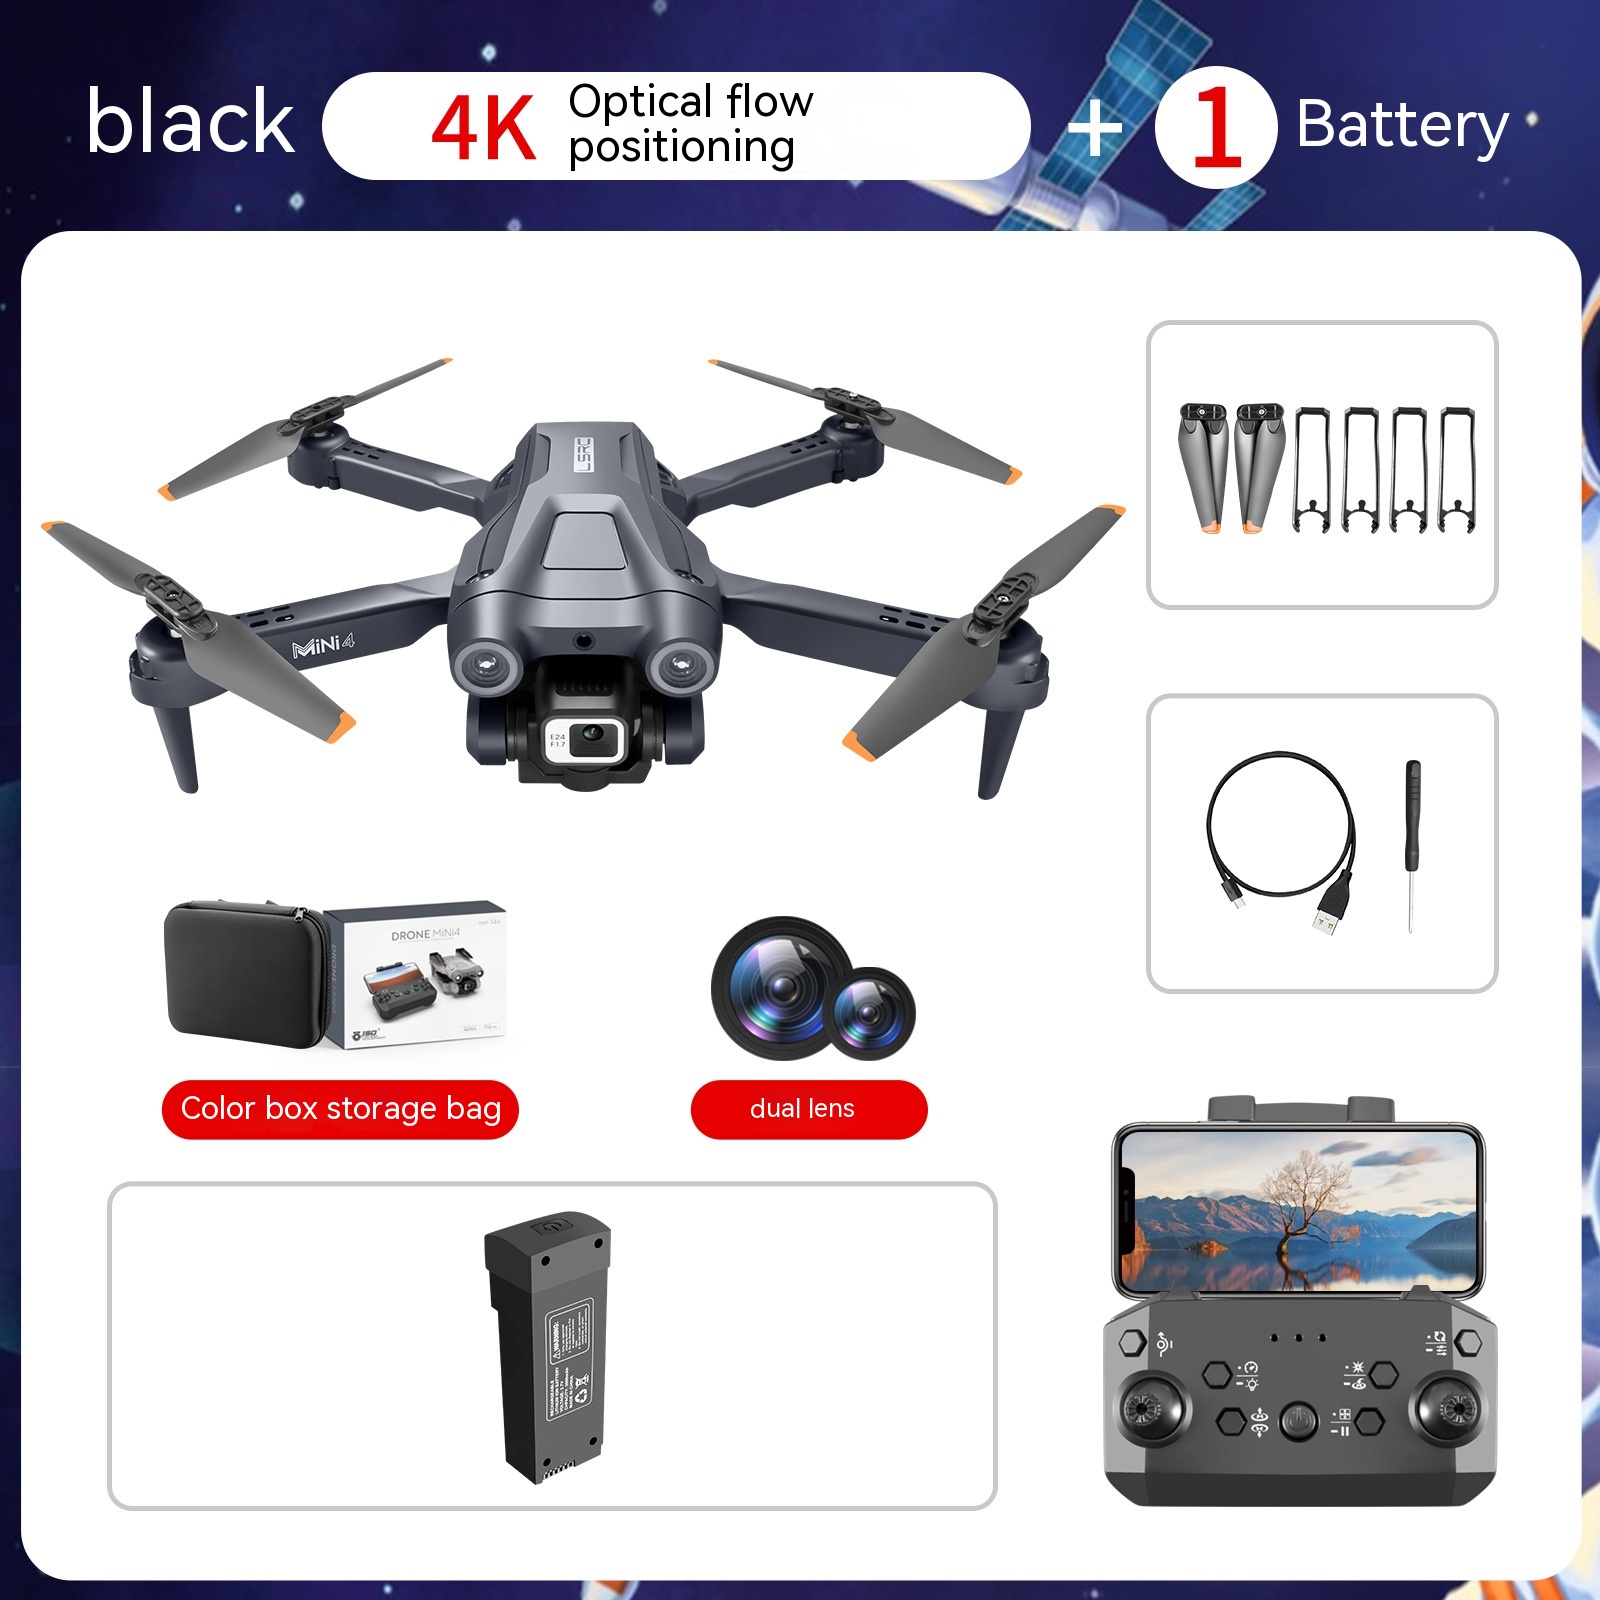 Contenu de l'emballage du drone 4K